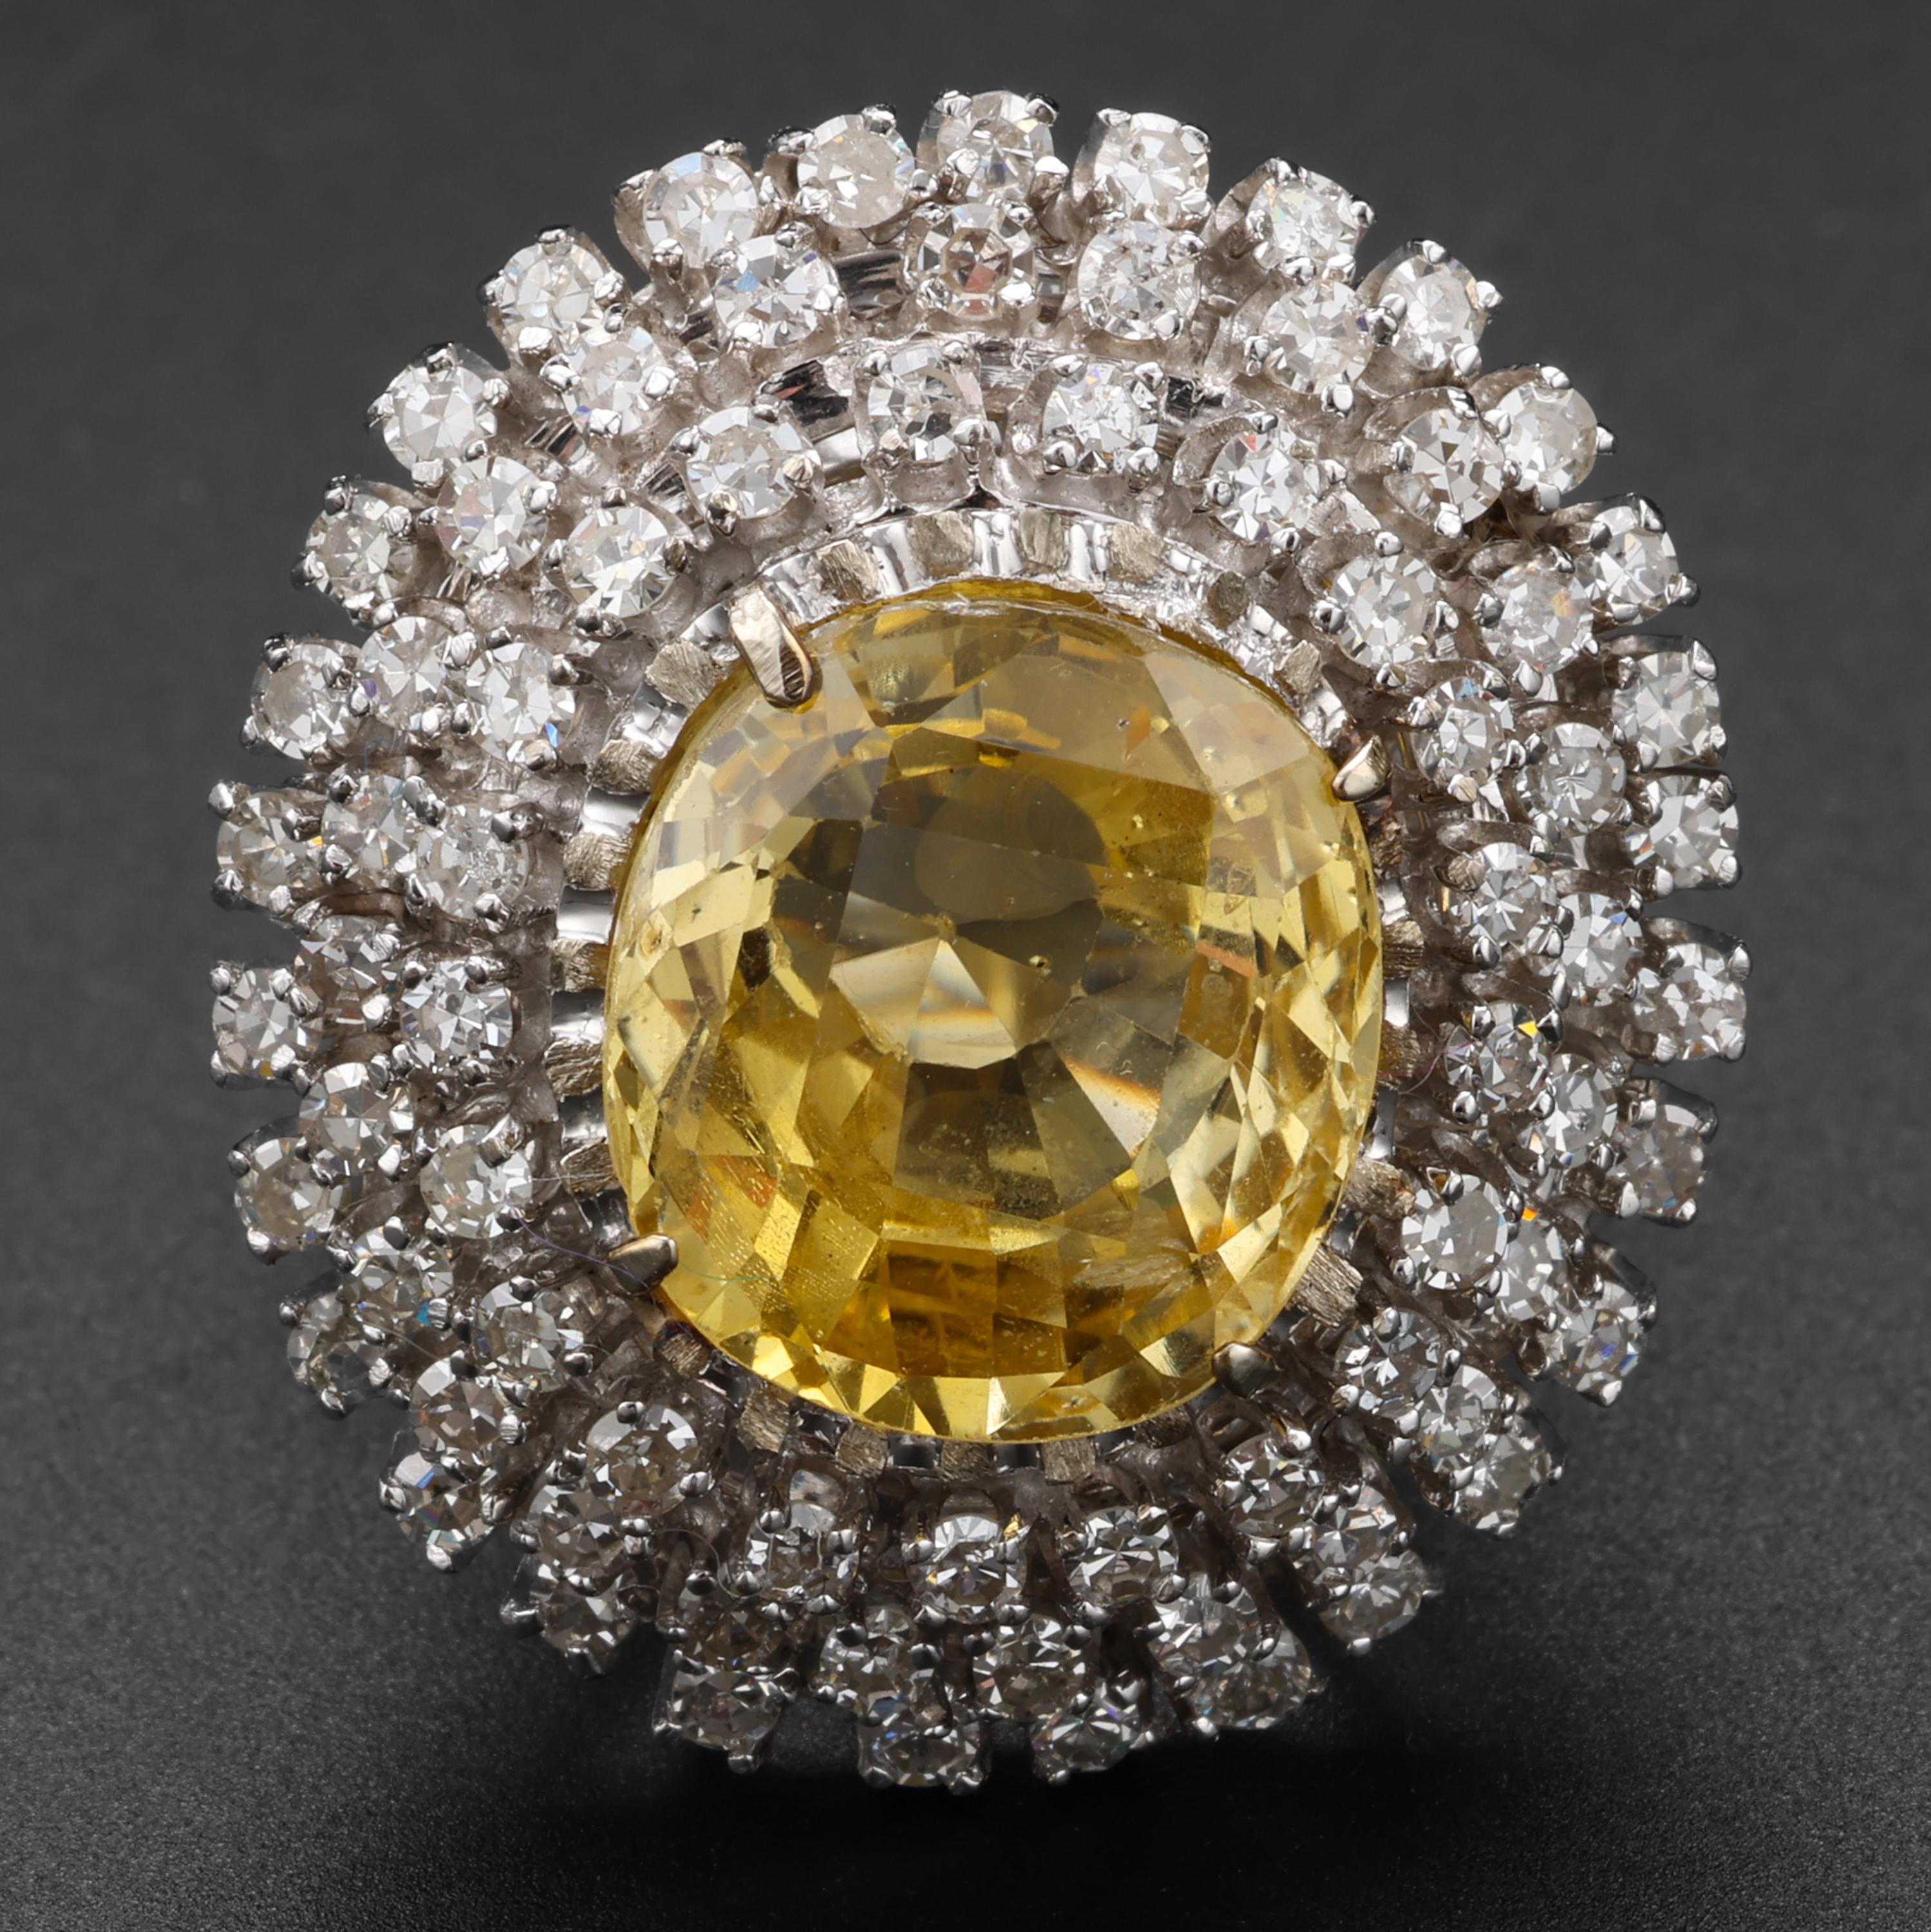 Ein absolut prächtiger, leuchtend kanariengelber Saphir mit einem Gewicht von 12,5 Karat ist von drei Halos aus feurigen Diamanten umgeben. Ein Retro-Ring von hypnotischer Schönheit. Die 75 augenreinen, weißen Diamanten wiegen insgesamt etwa 1,5